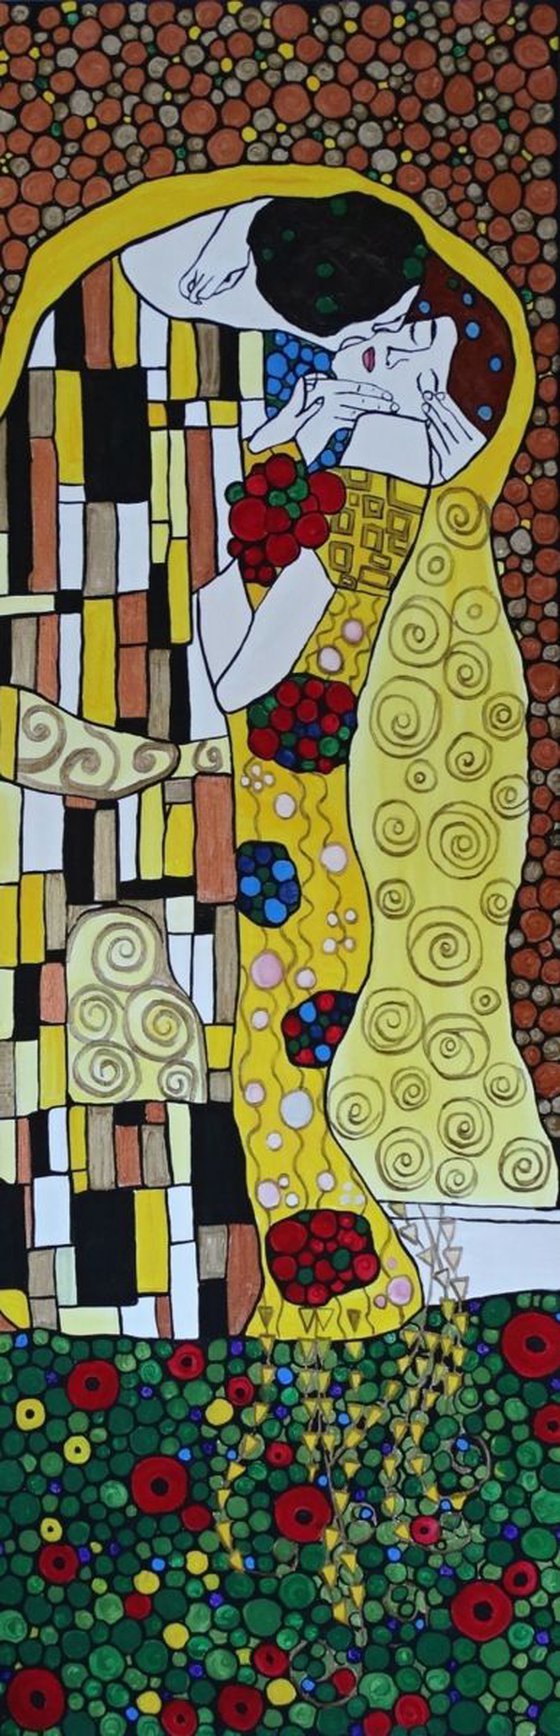 The Kiss, inspired art by Gustav Klimt